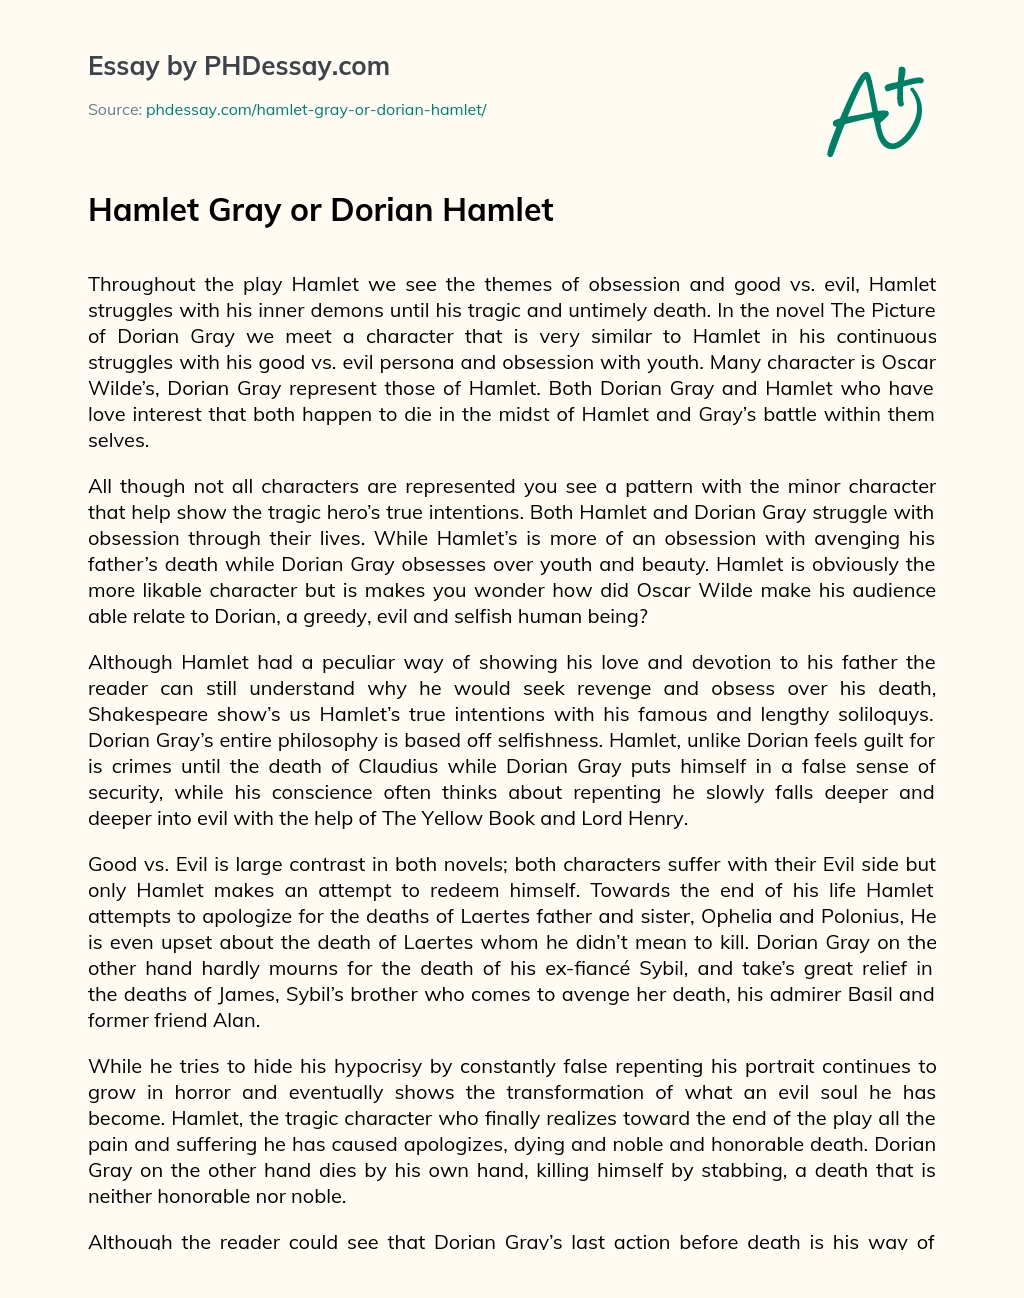 Hamlet Gray or Dorian Hamlet essay